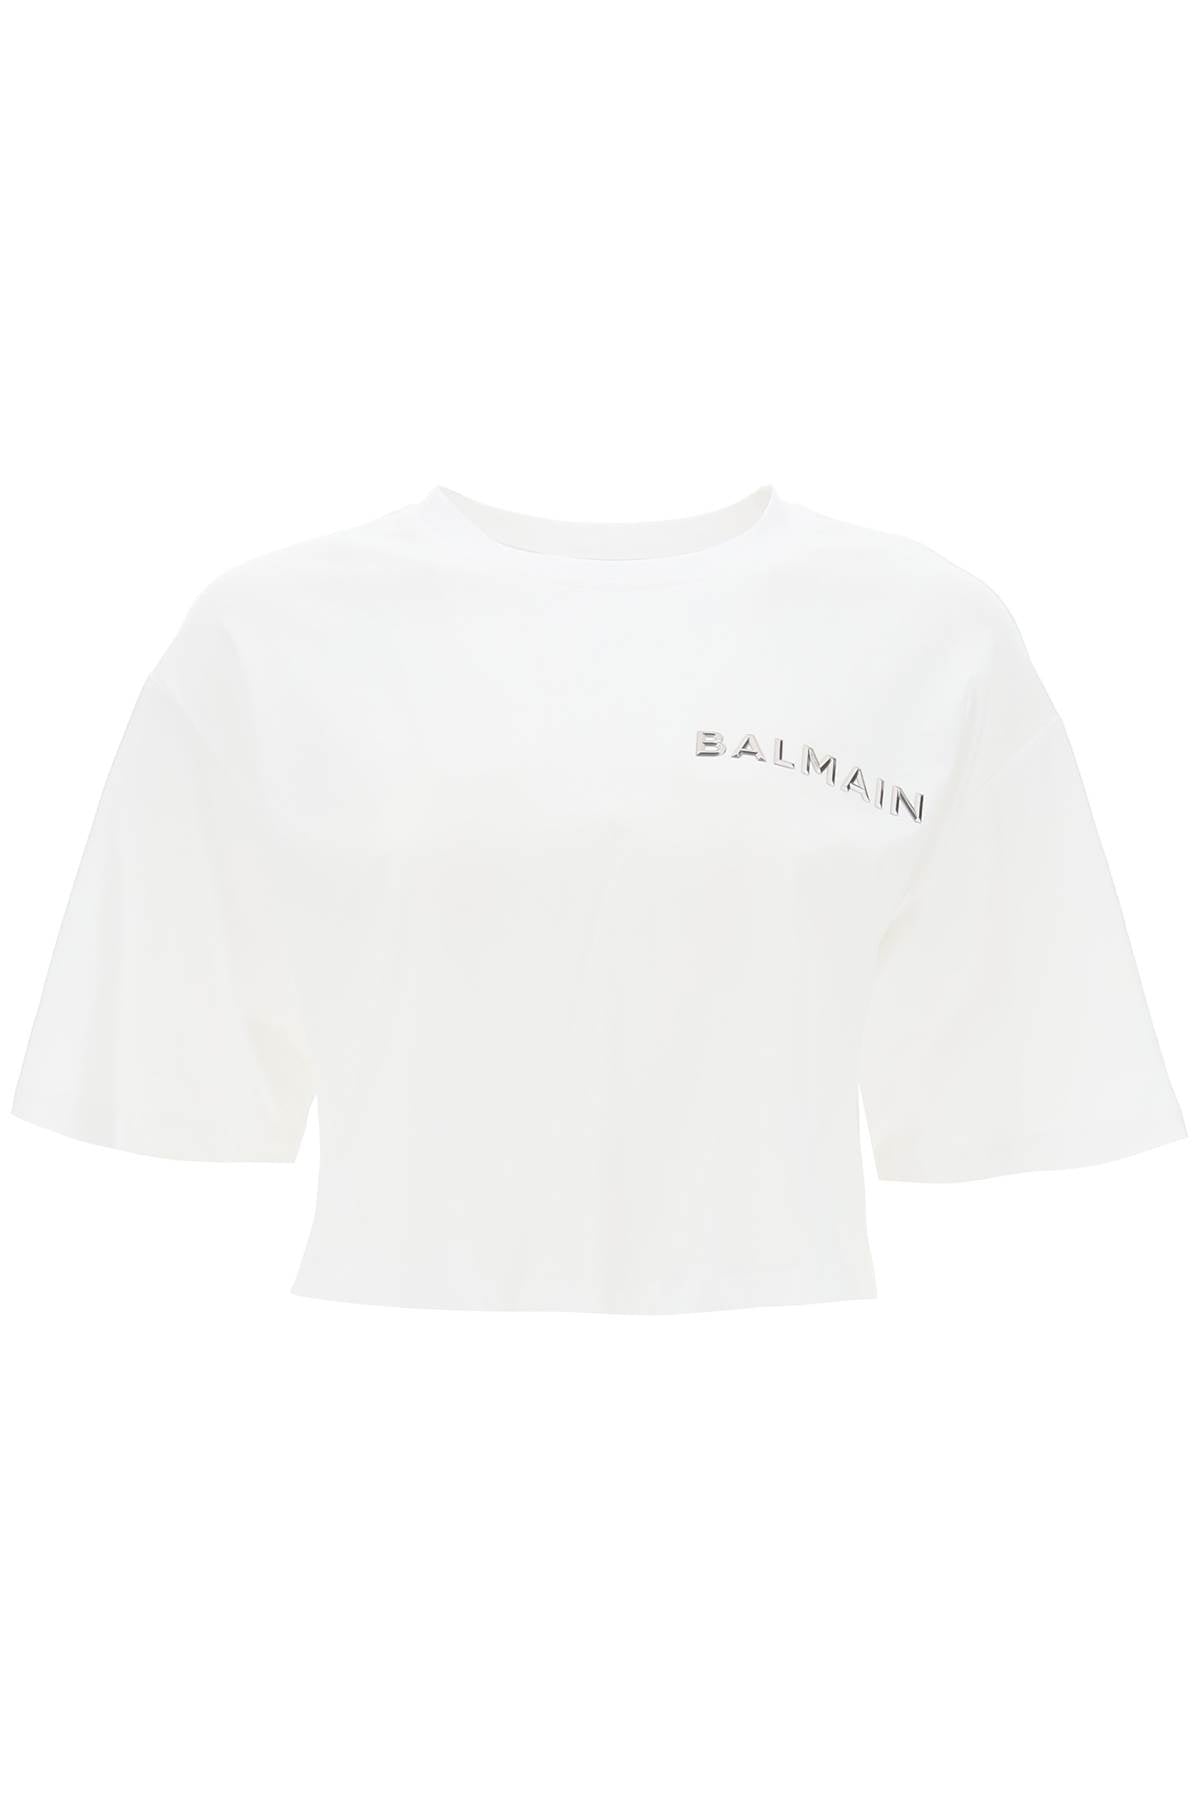 Balmain cropped t-shirt with metallic logo CF1EE020BC61 BLANC ARGENT